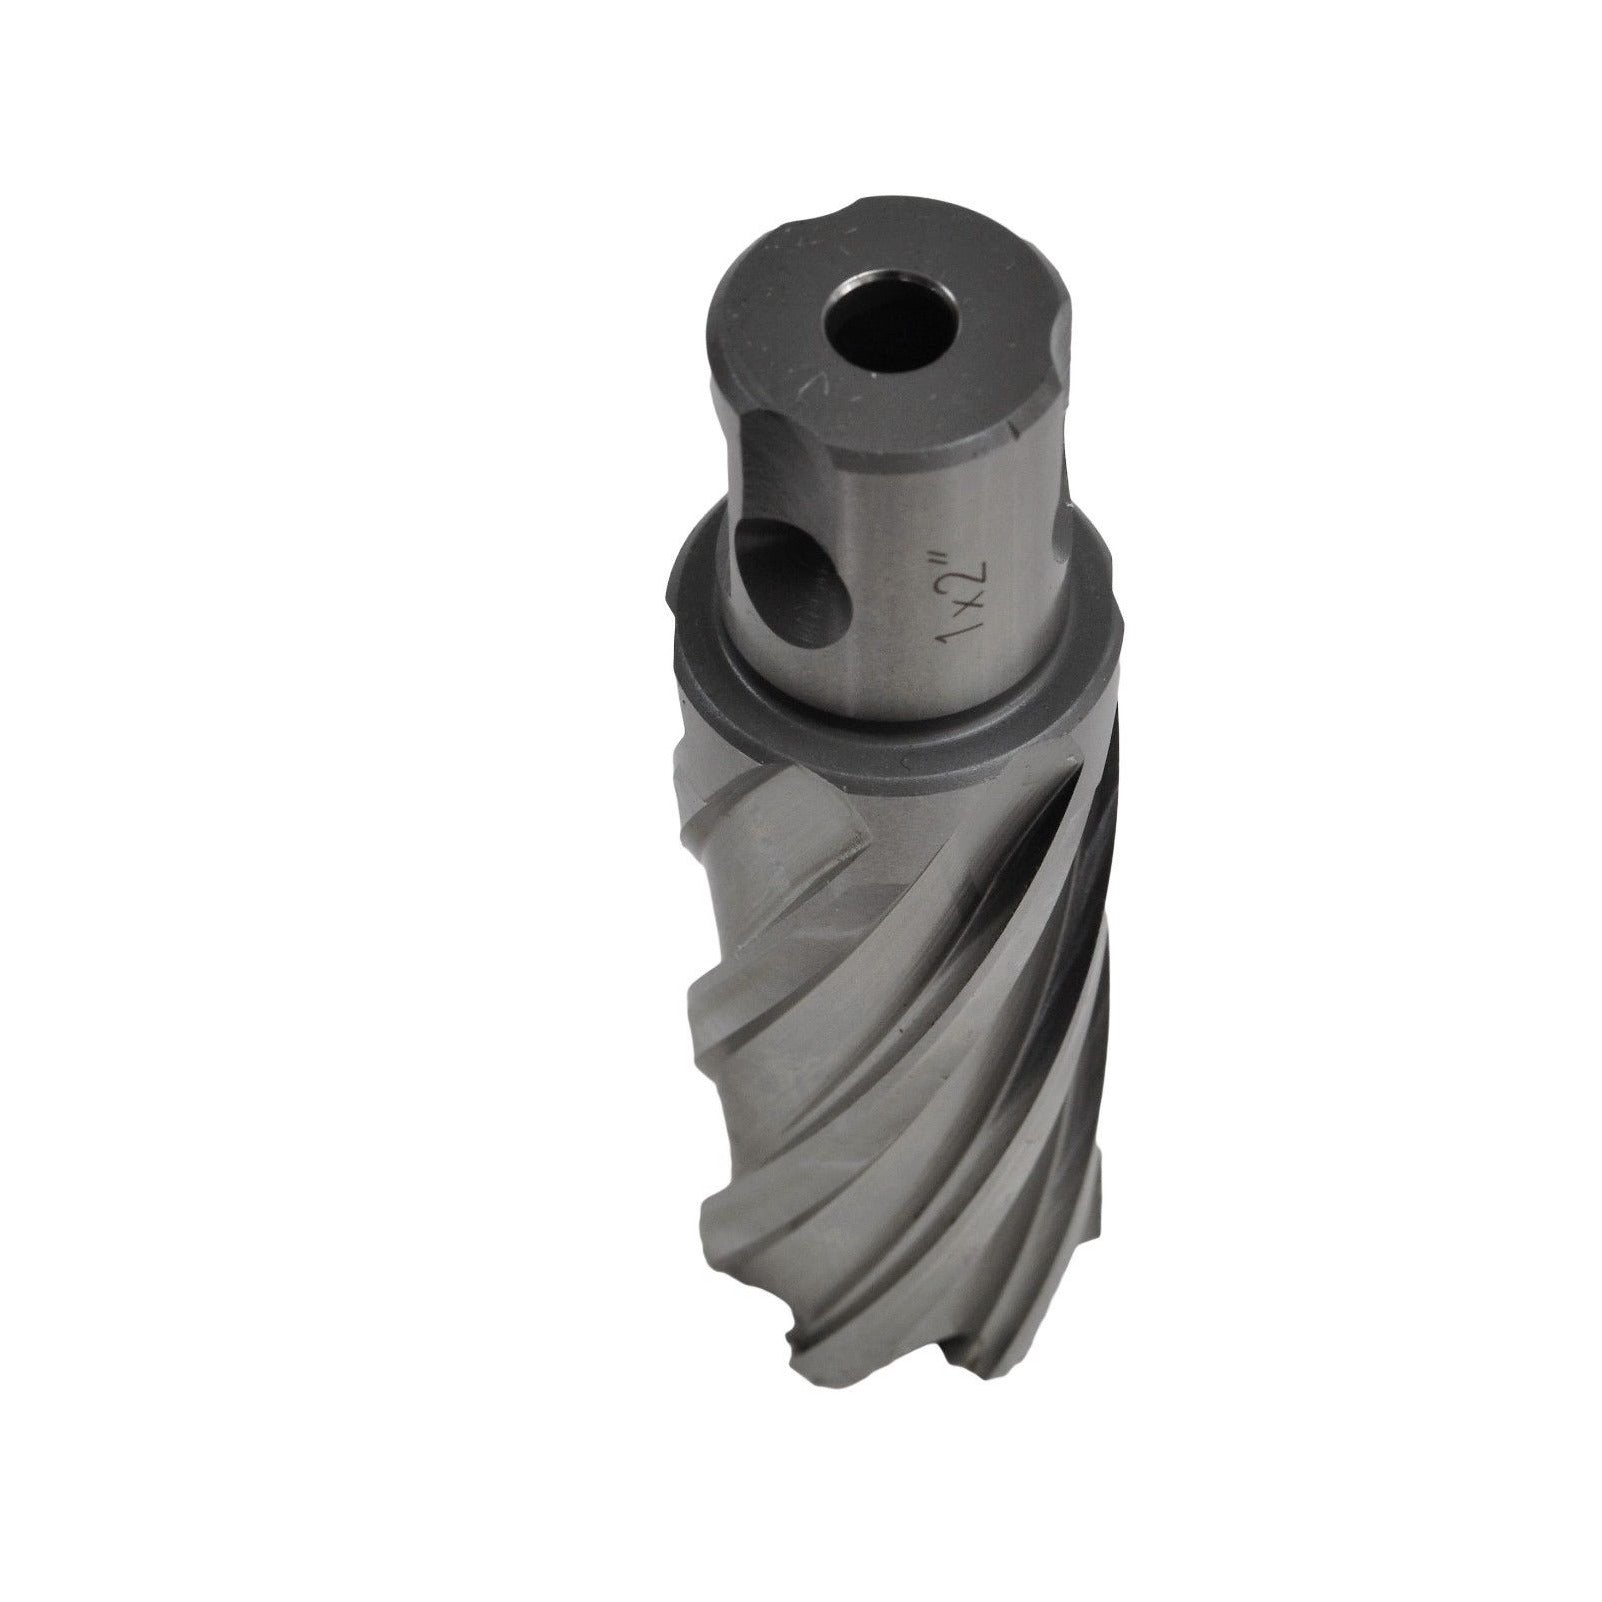 1"x2" HSS Annular Broach Cutter ; Magnetic Drill ; Rotabroach ; Universal Shank